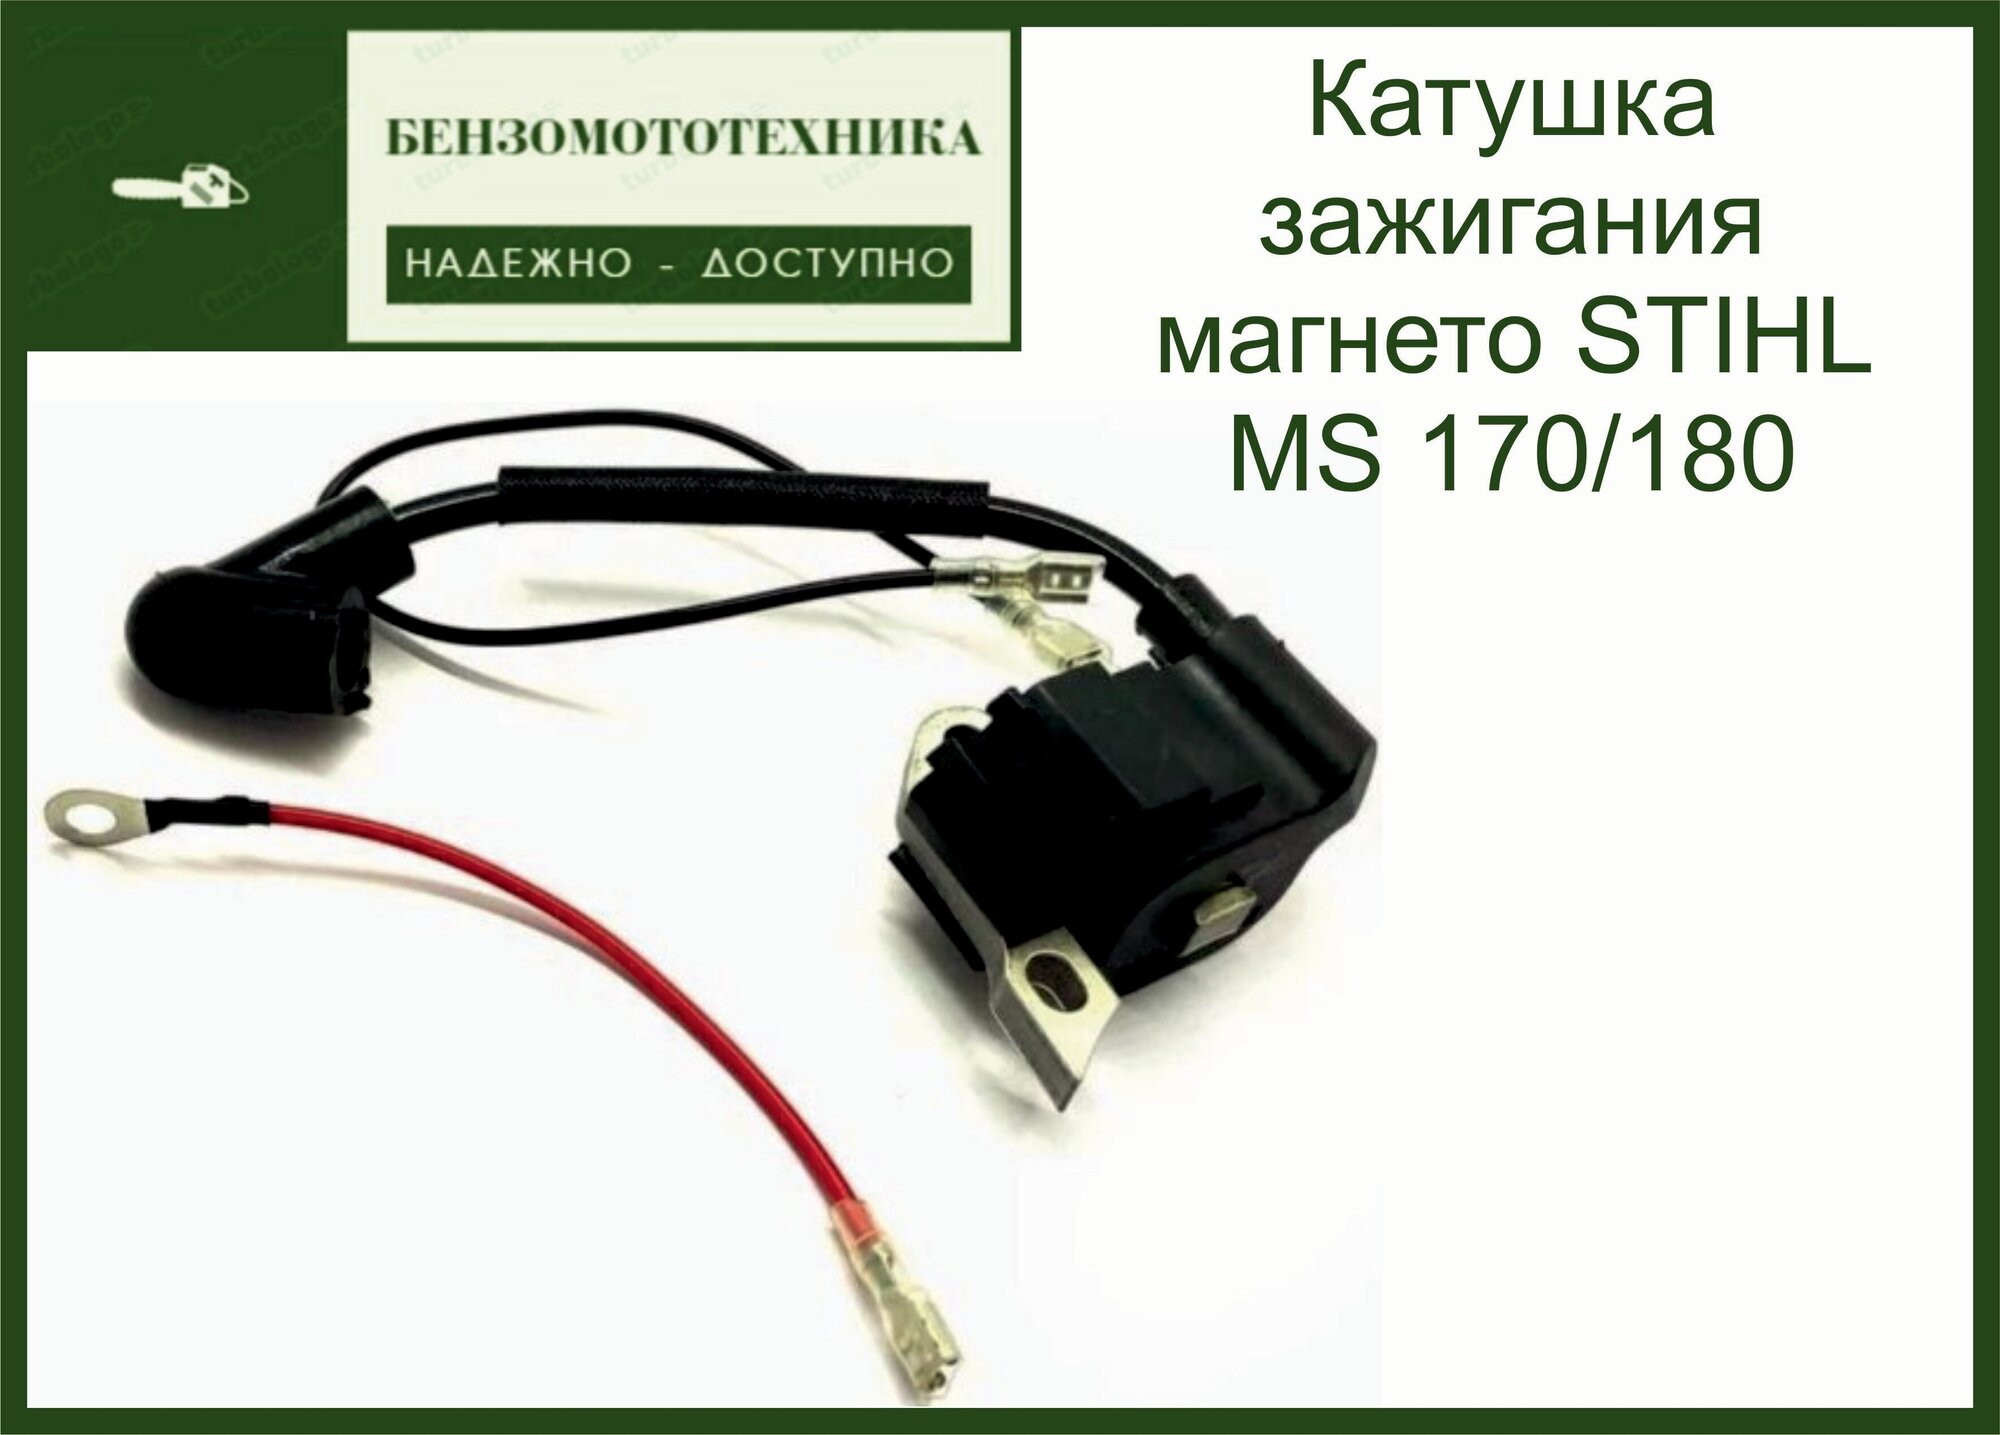 Катушка зажигания магнето STIHL MS 170/180